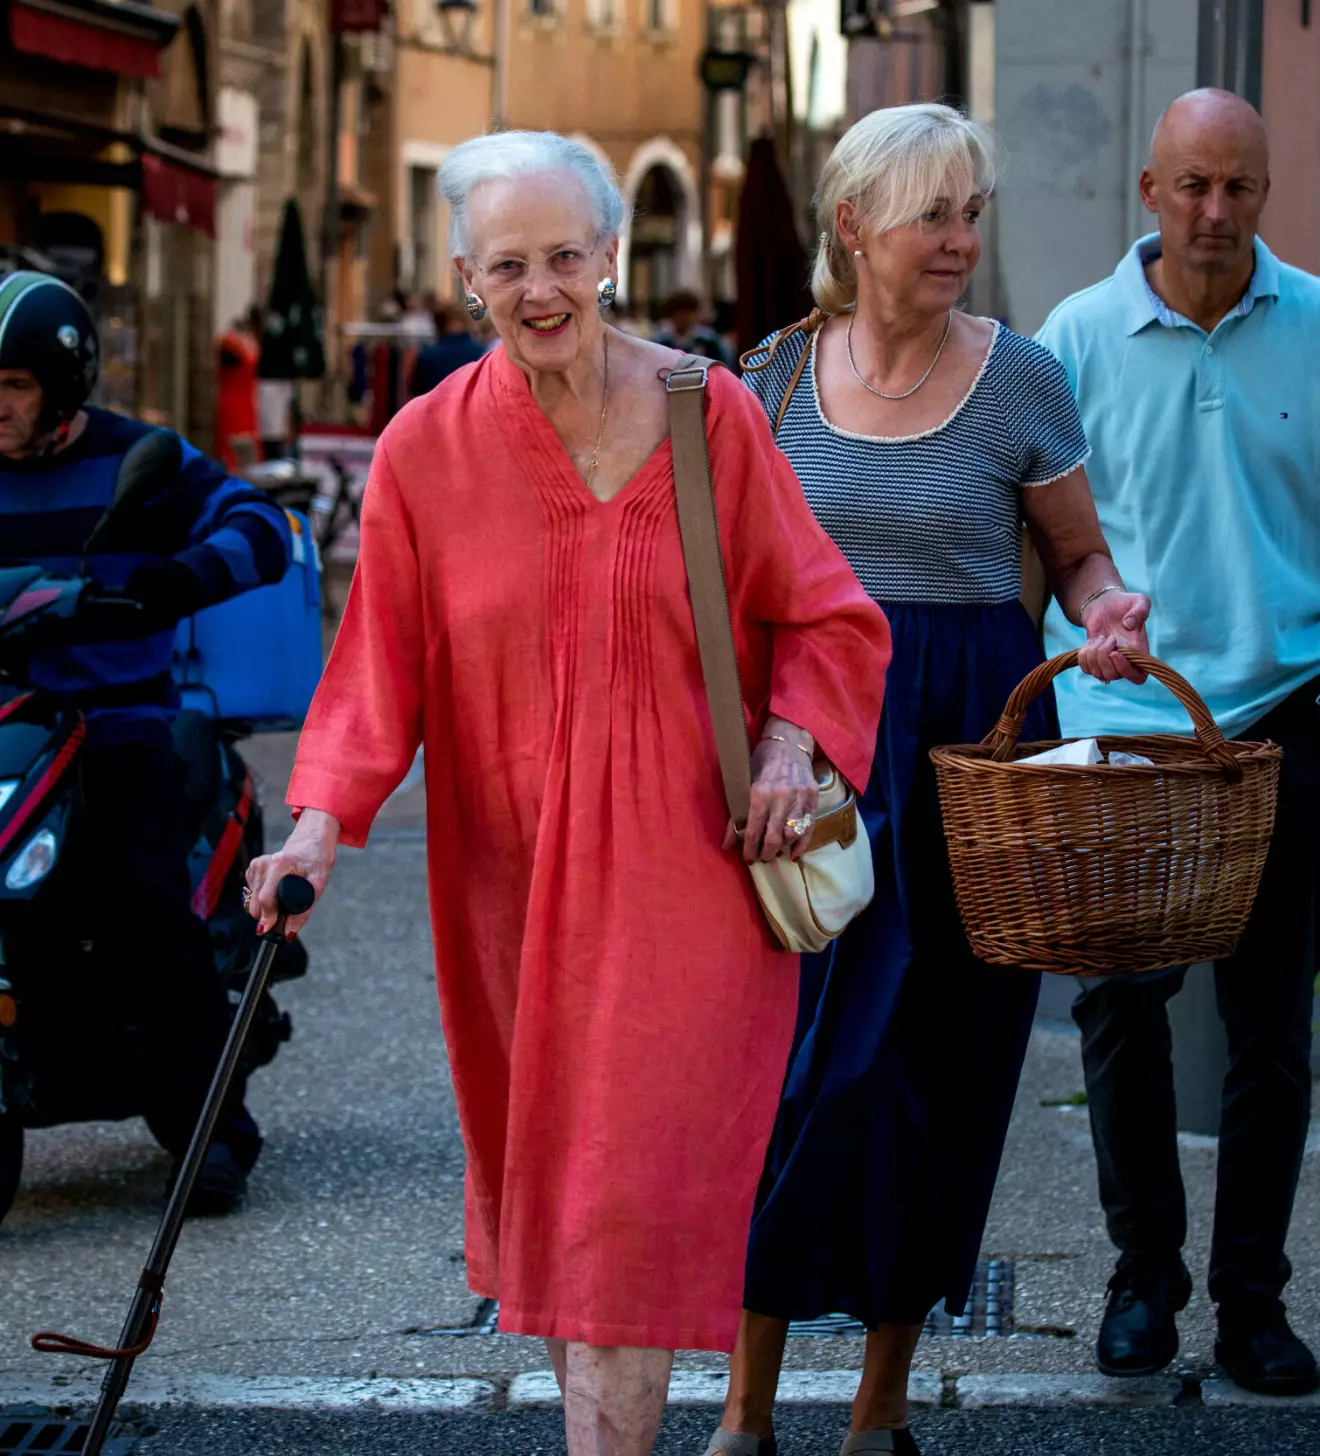 Drottning Margrethe med sin hovdam – de handlar på marknaden i franska staden Cahors